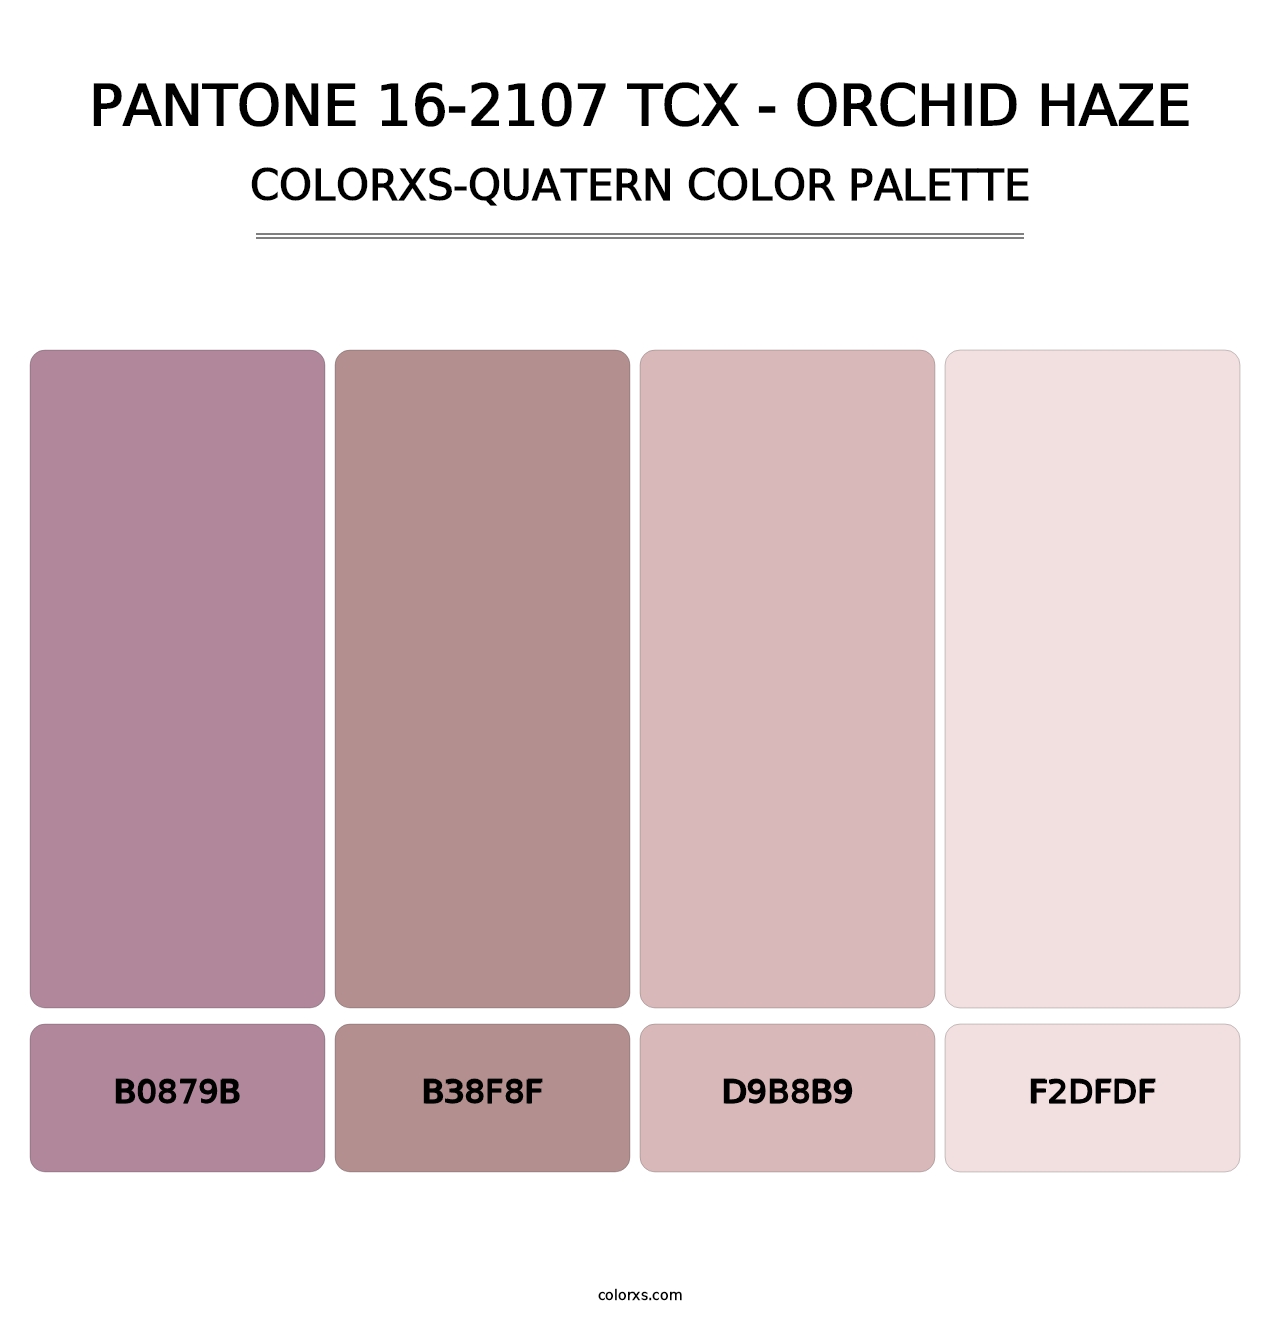 PANTONE 16-2107 TCX - Orchid Haze - Colorxs Quatern Palette